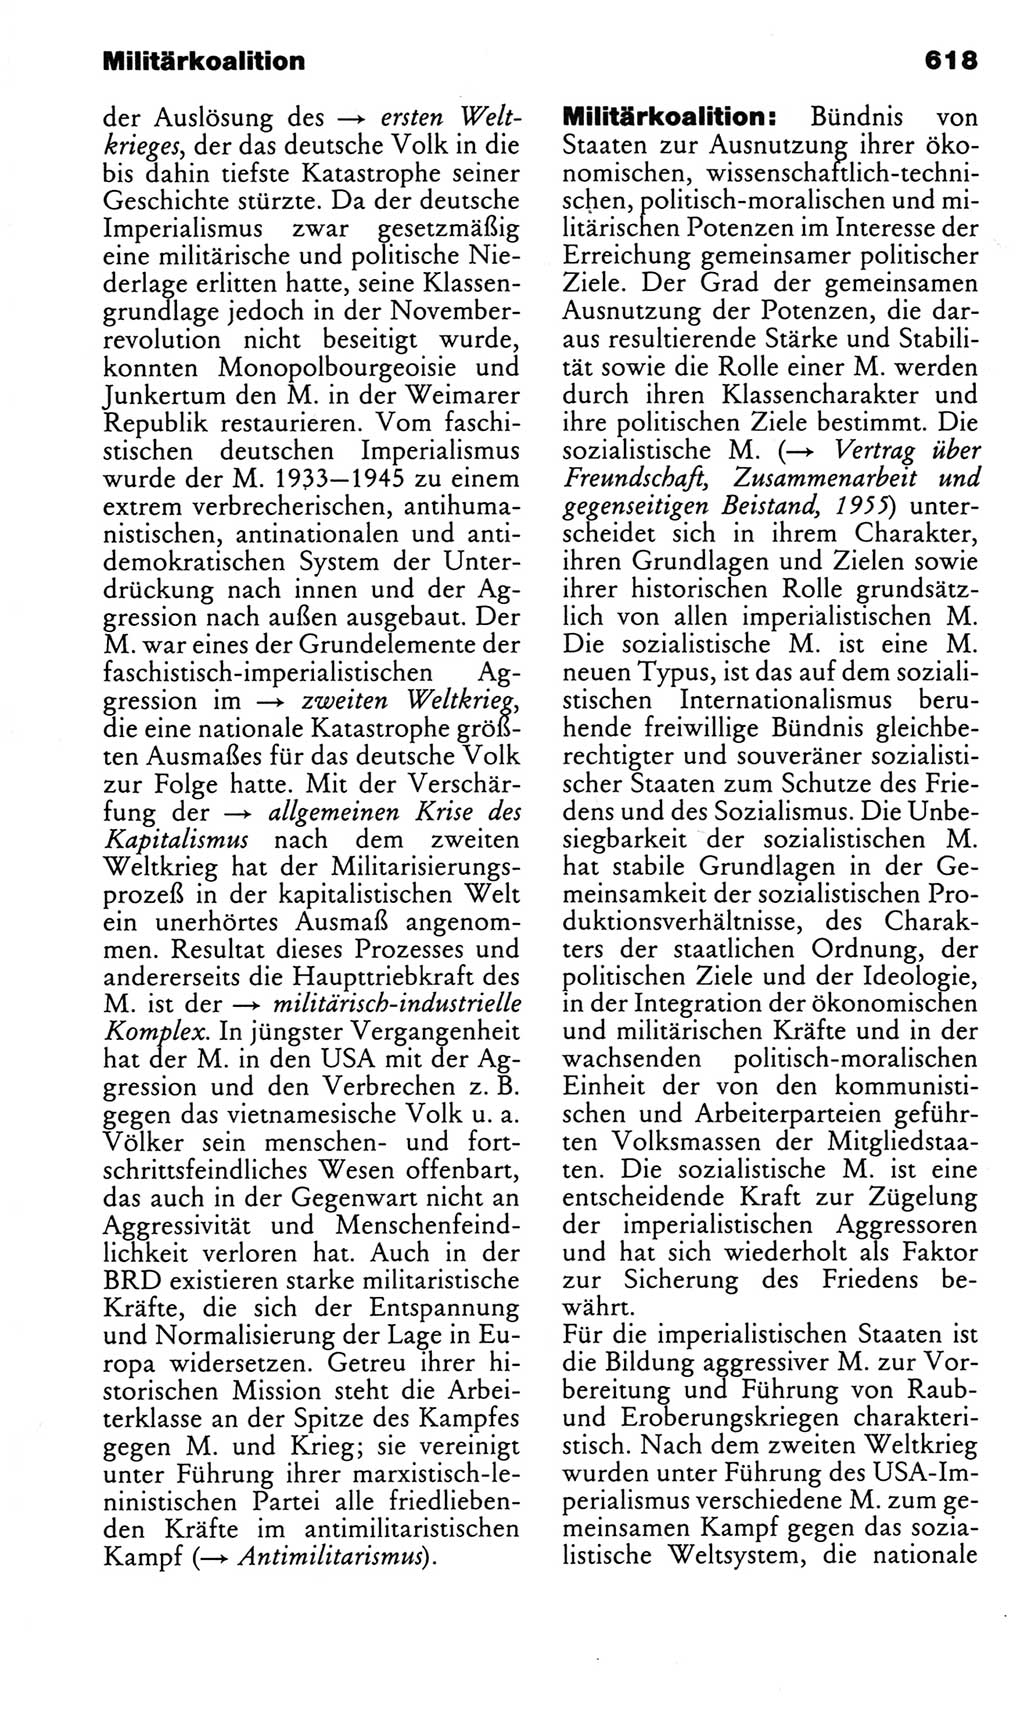 Kleines politisches Wörterbuch [Deutsche Demokratische Republik (DDR)] 1983, Seite 618 (Kl. pol. Wb. DDR 1983, S. 618)